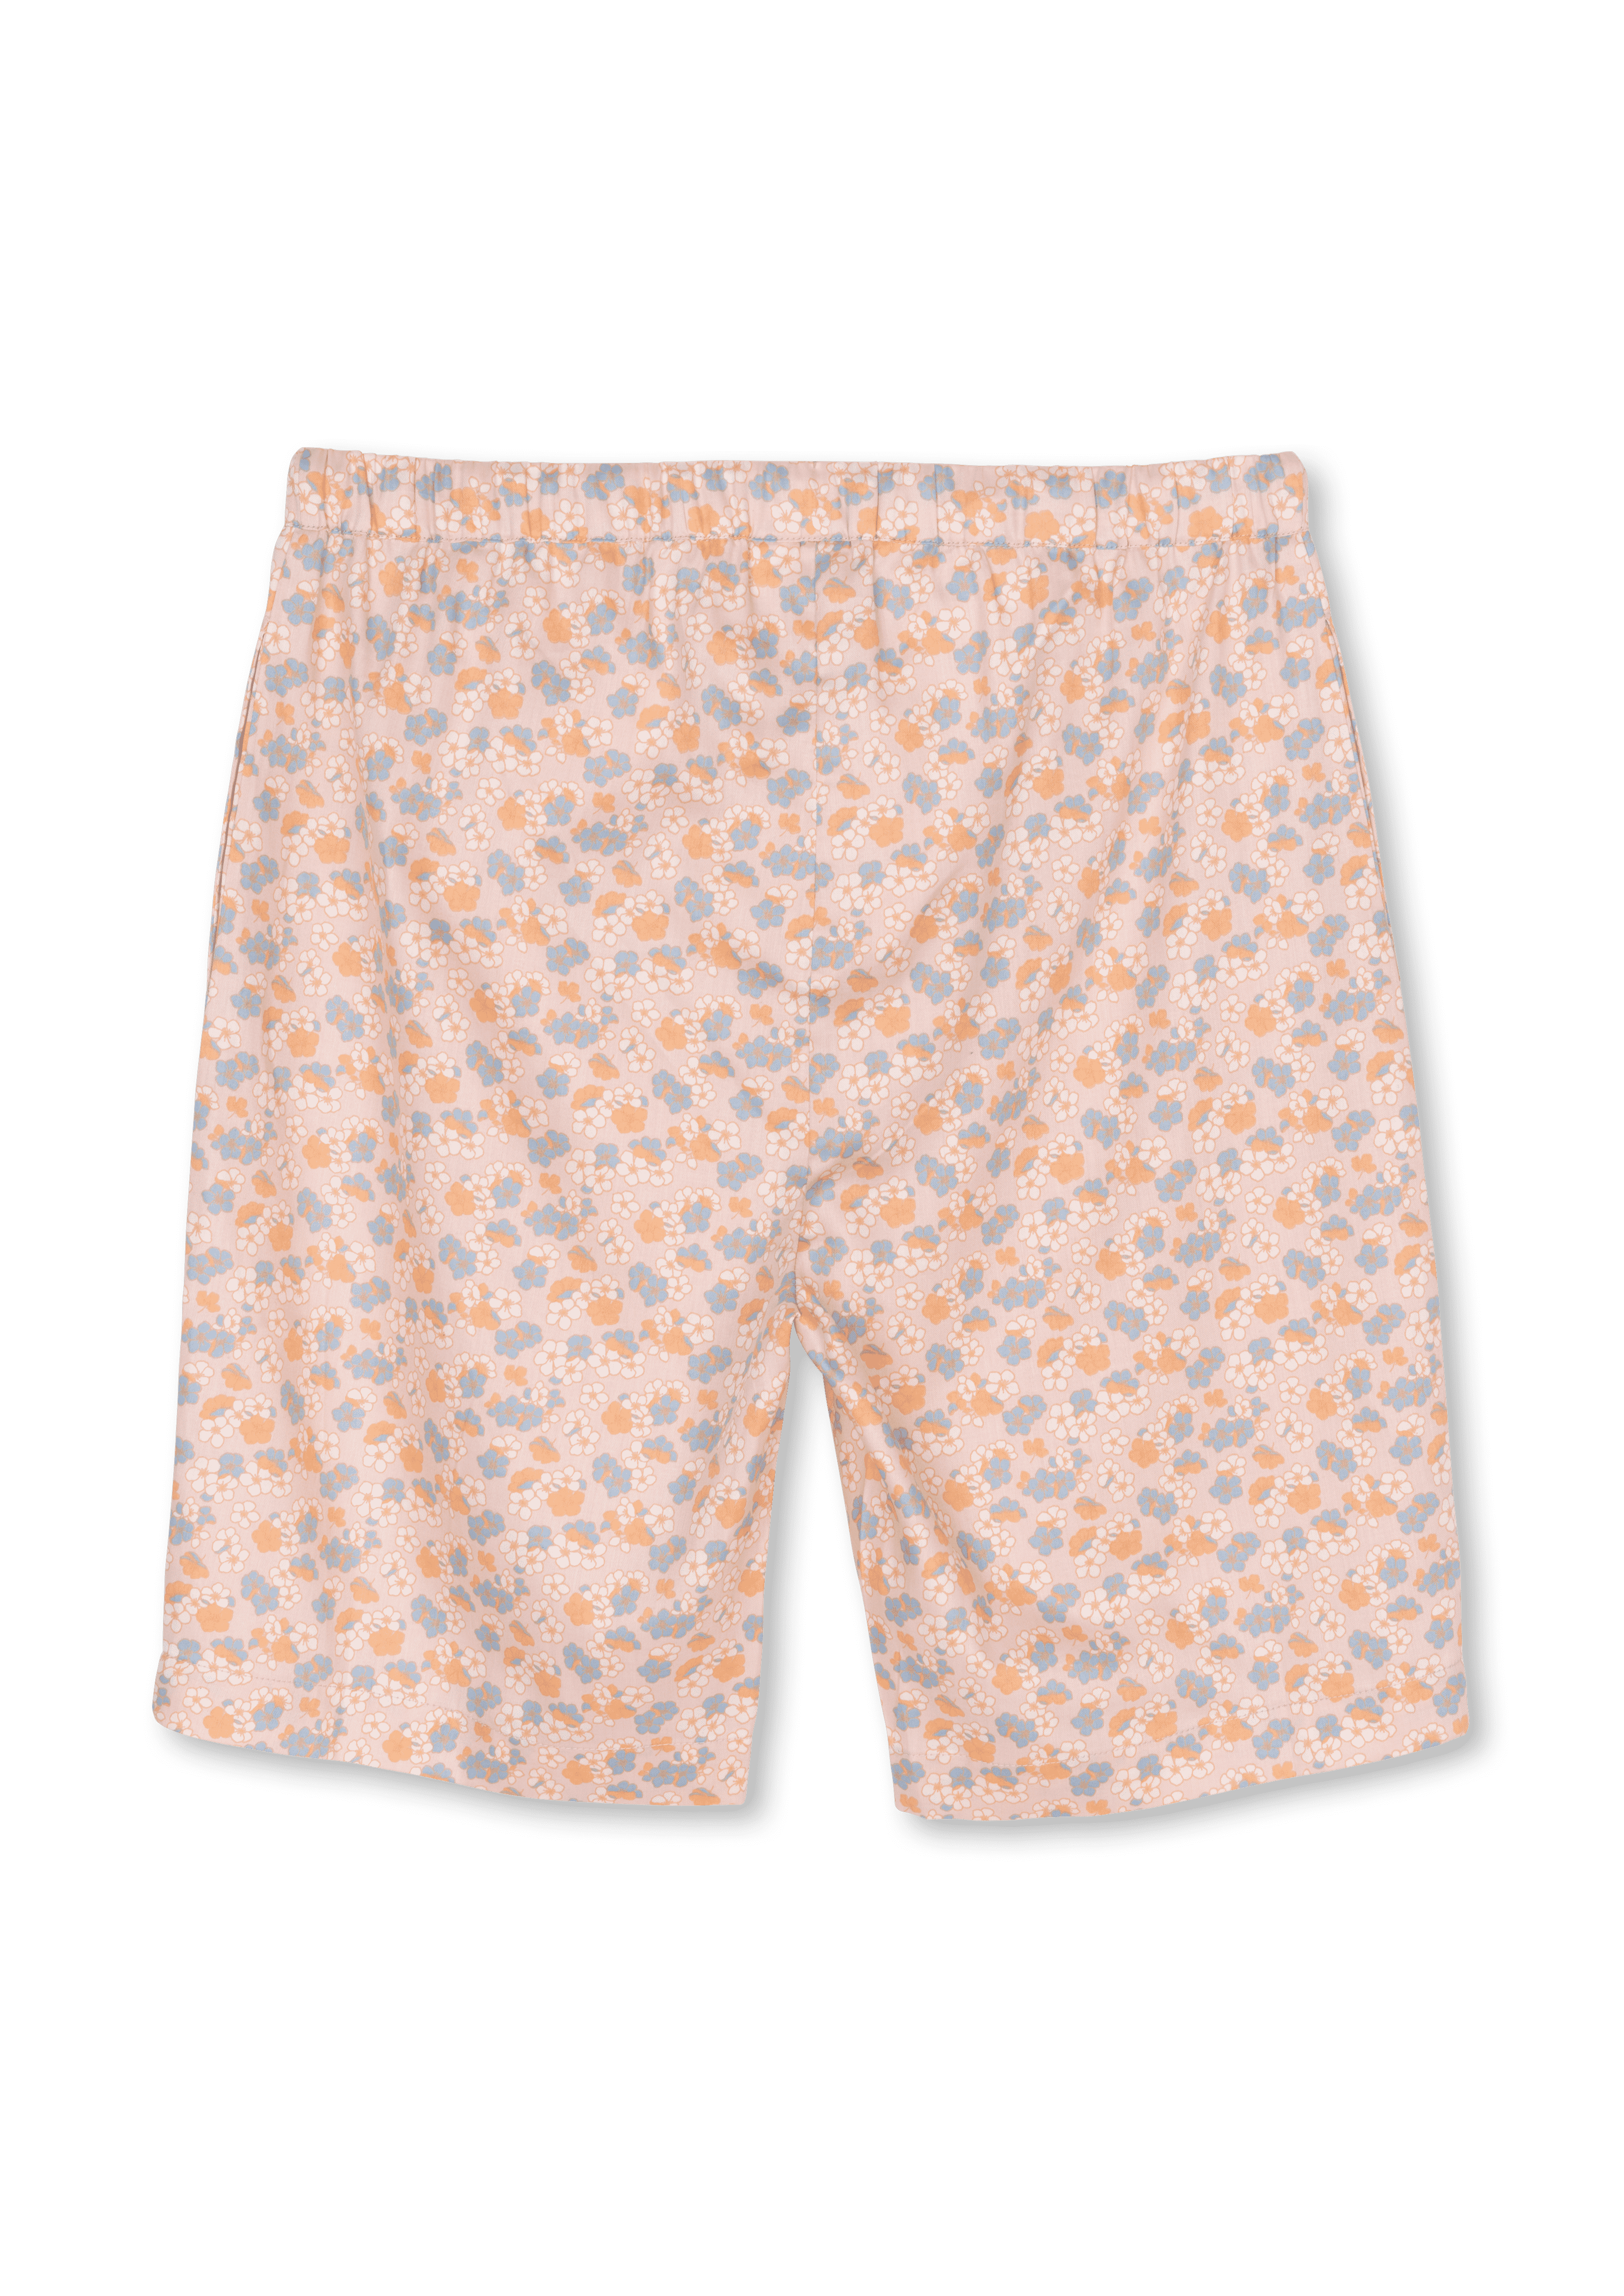 Ava shorts S/M